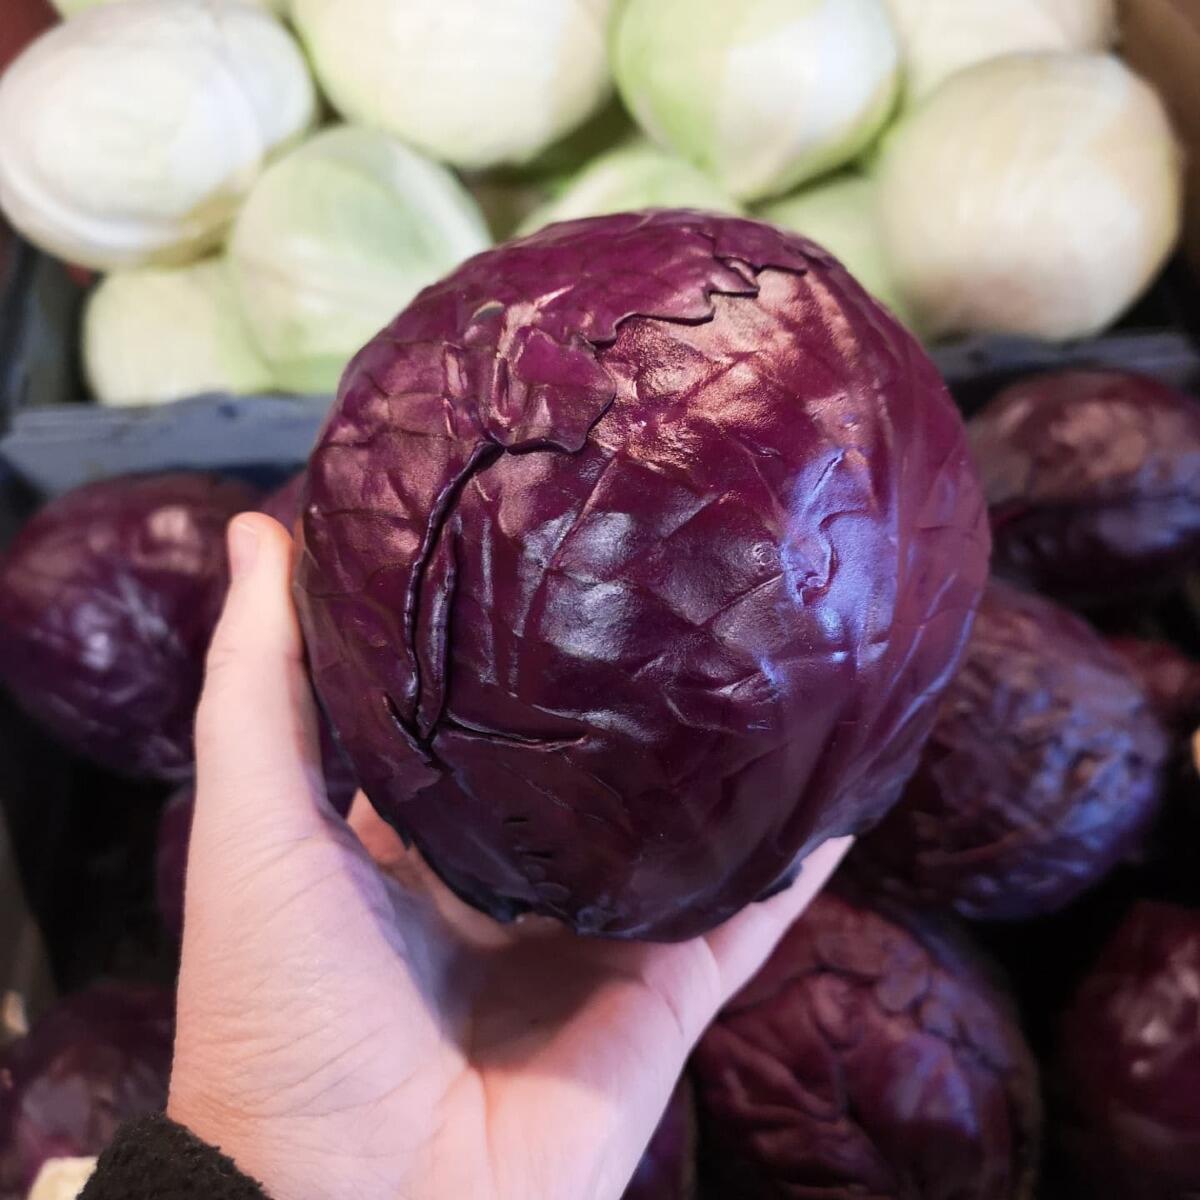 Källsprångs Gård's Red Cabbage'